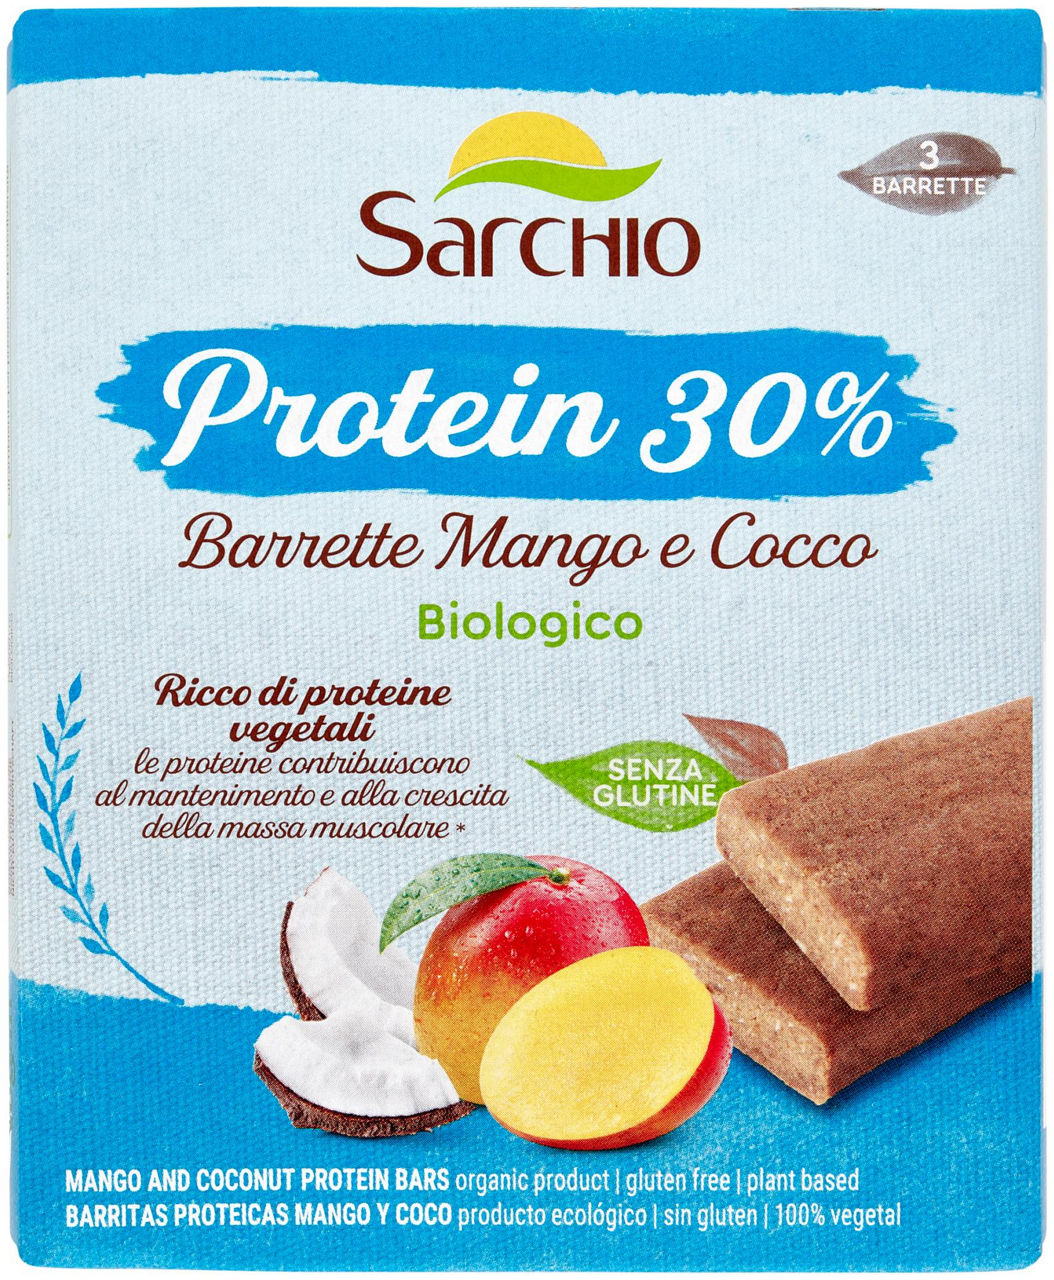 Sg-barrette protein mango e cocco bio sarchio g135